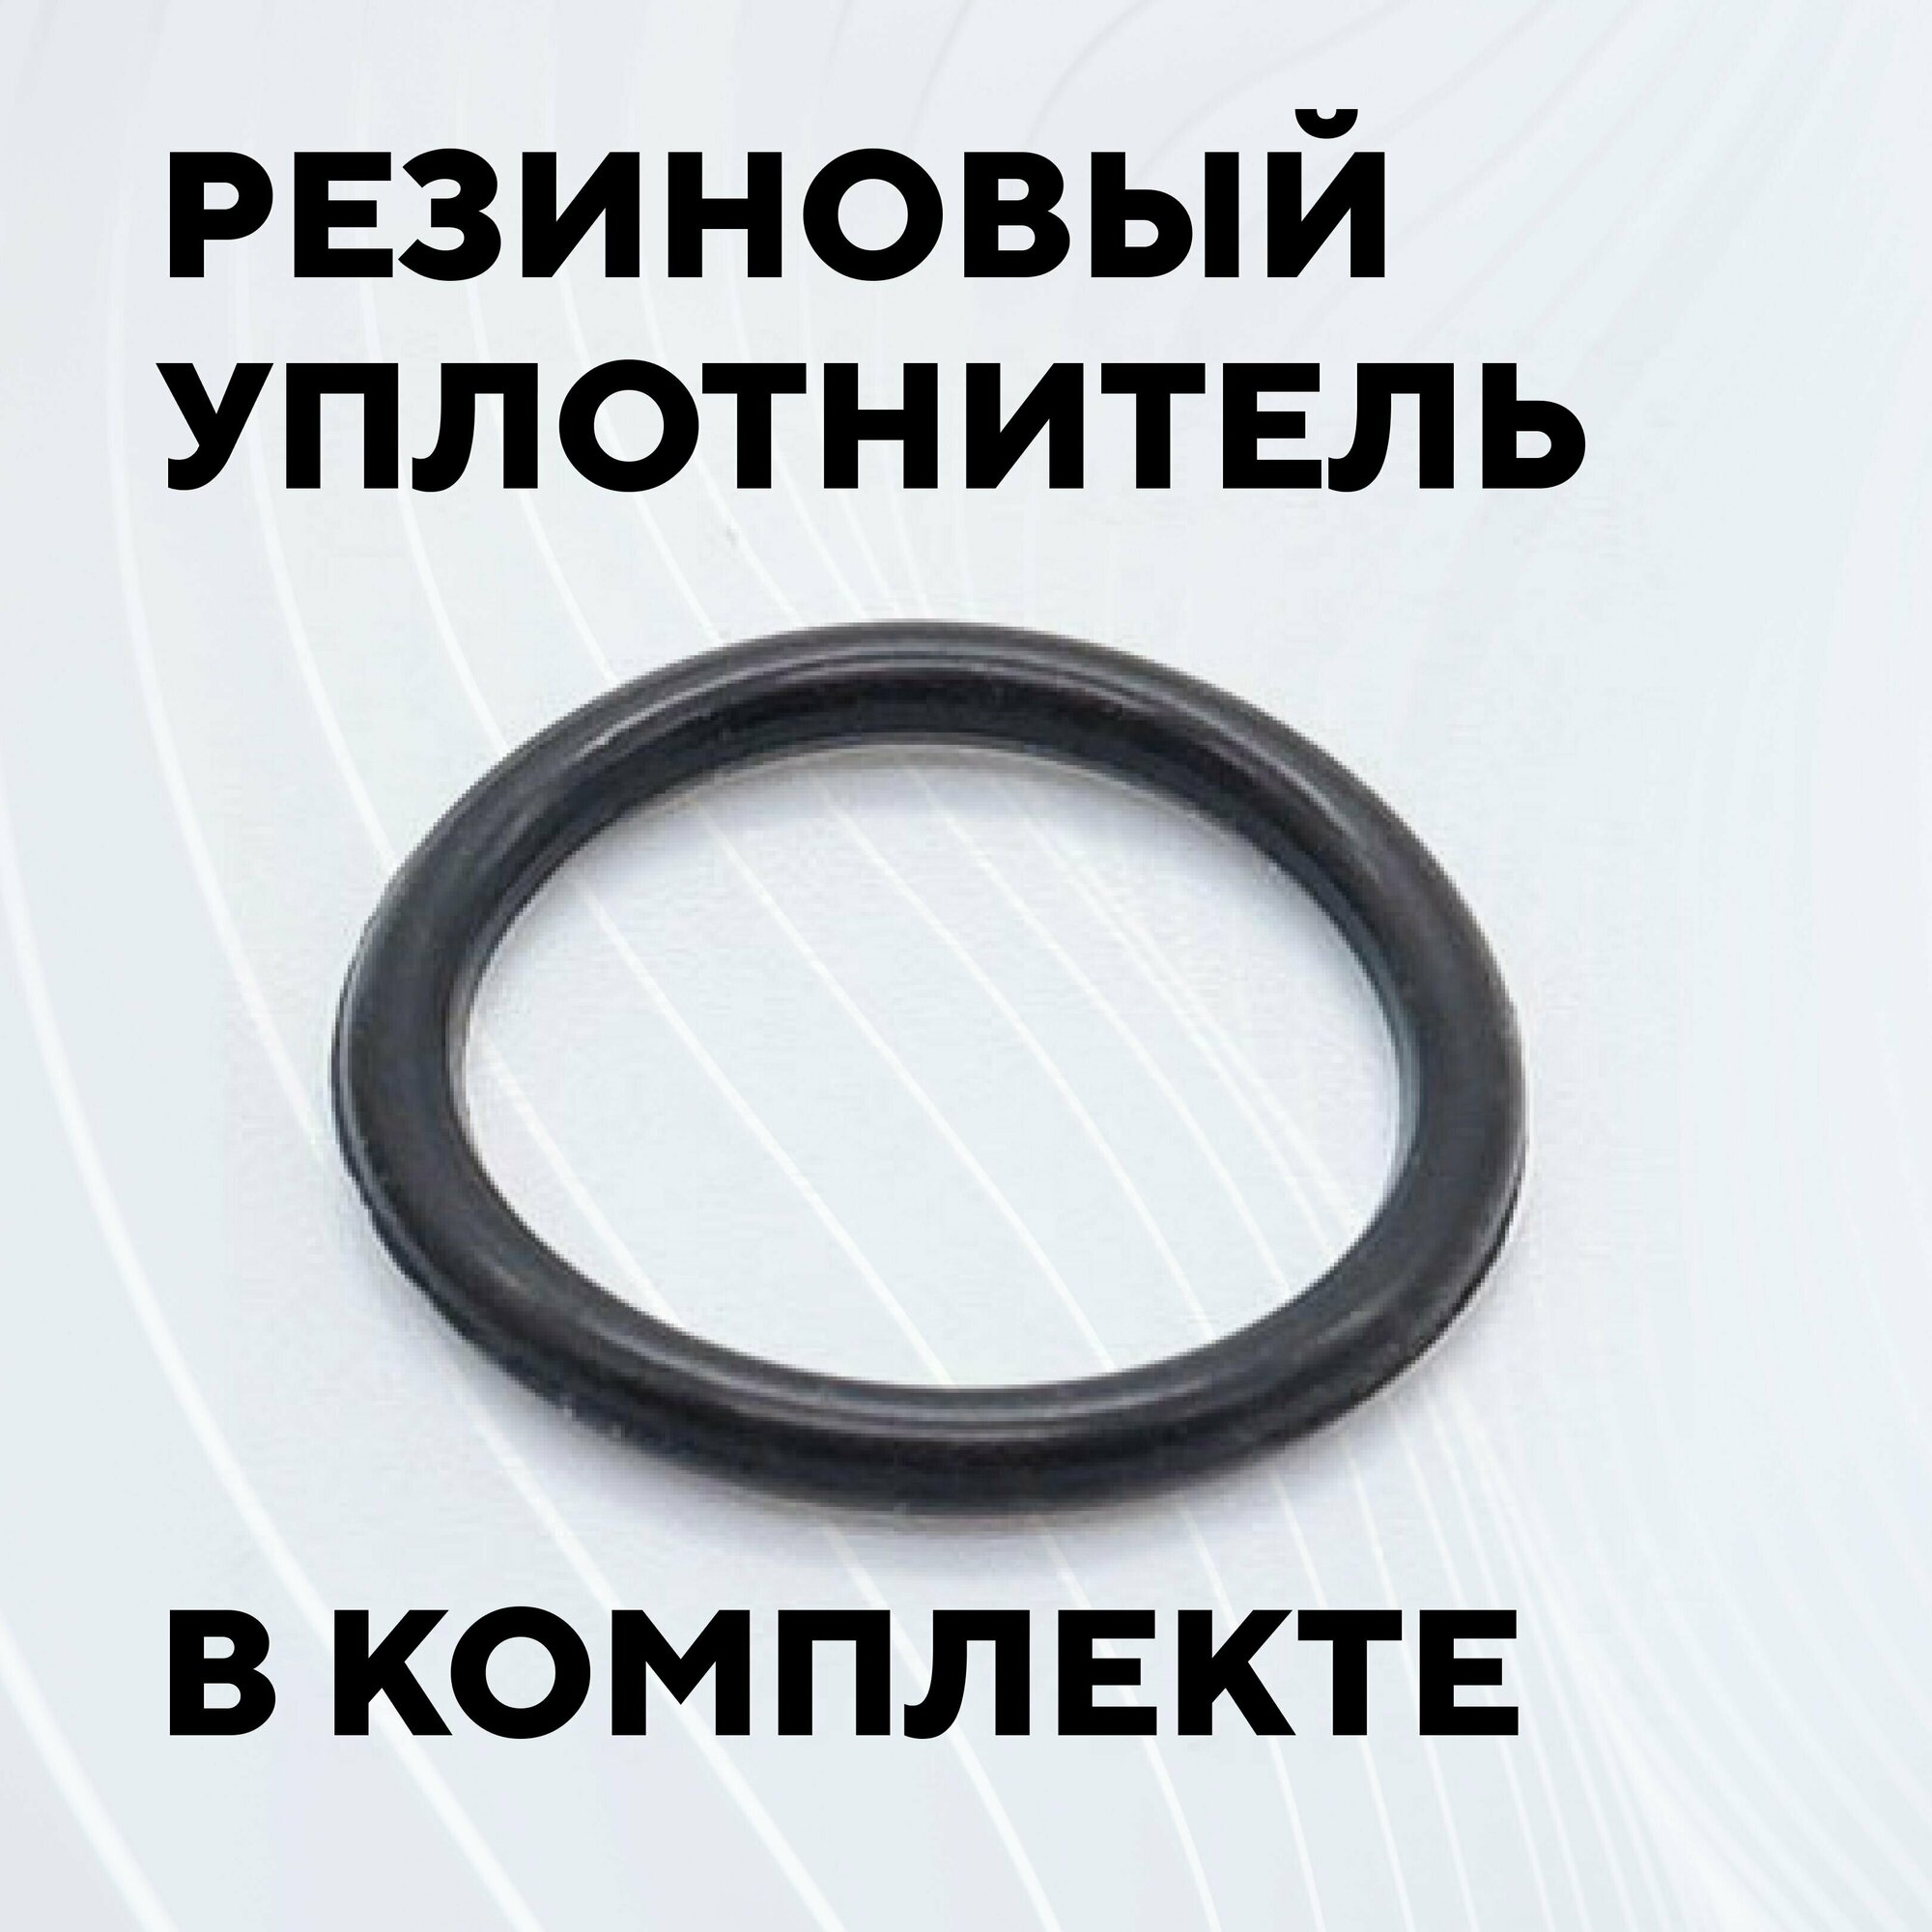 Кнопка для монтажа на корпус металлическая с индикатором (12-24 В, 16 мм) / С фиксацией / Круг / Синий